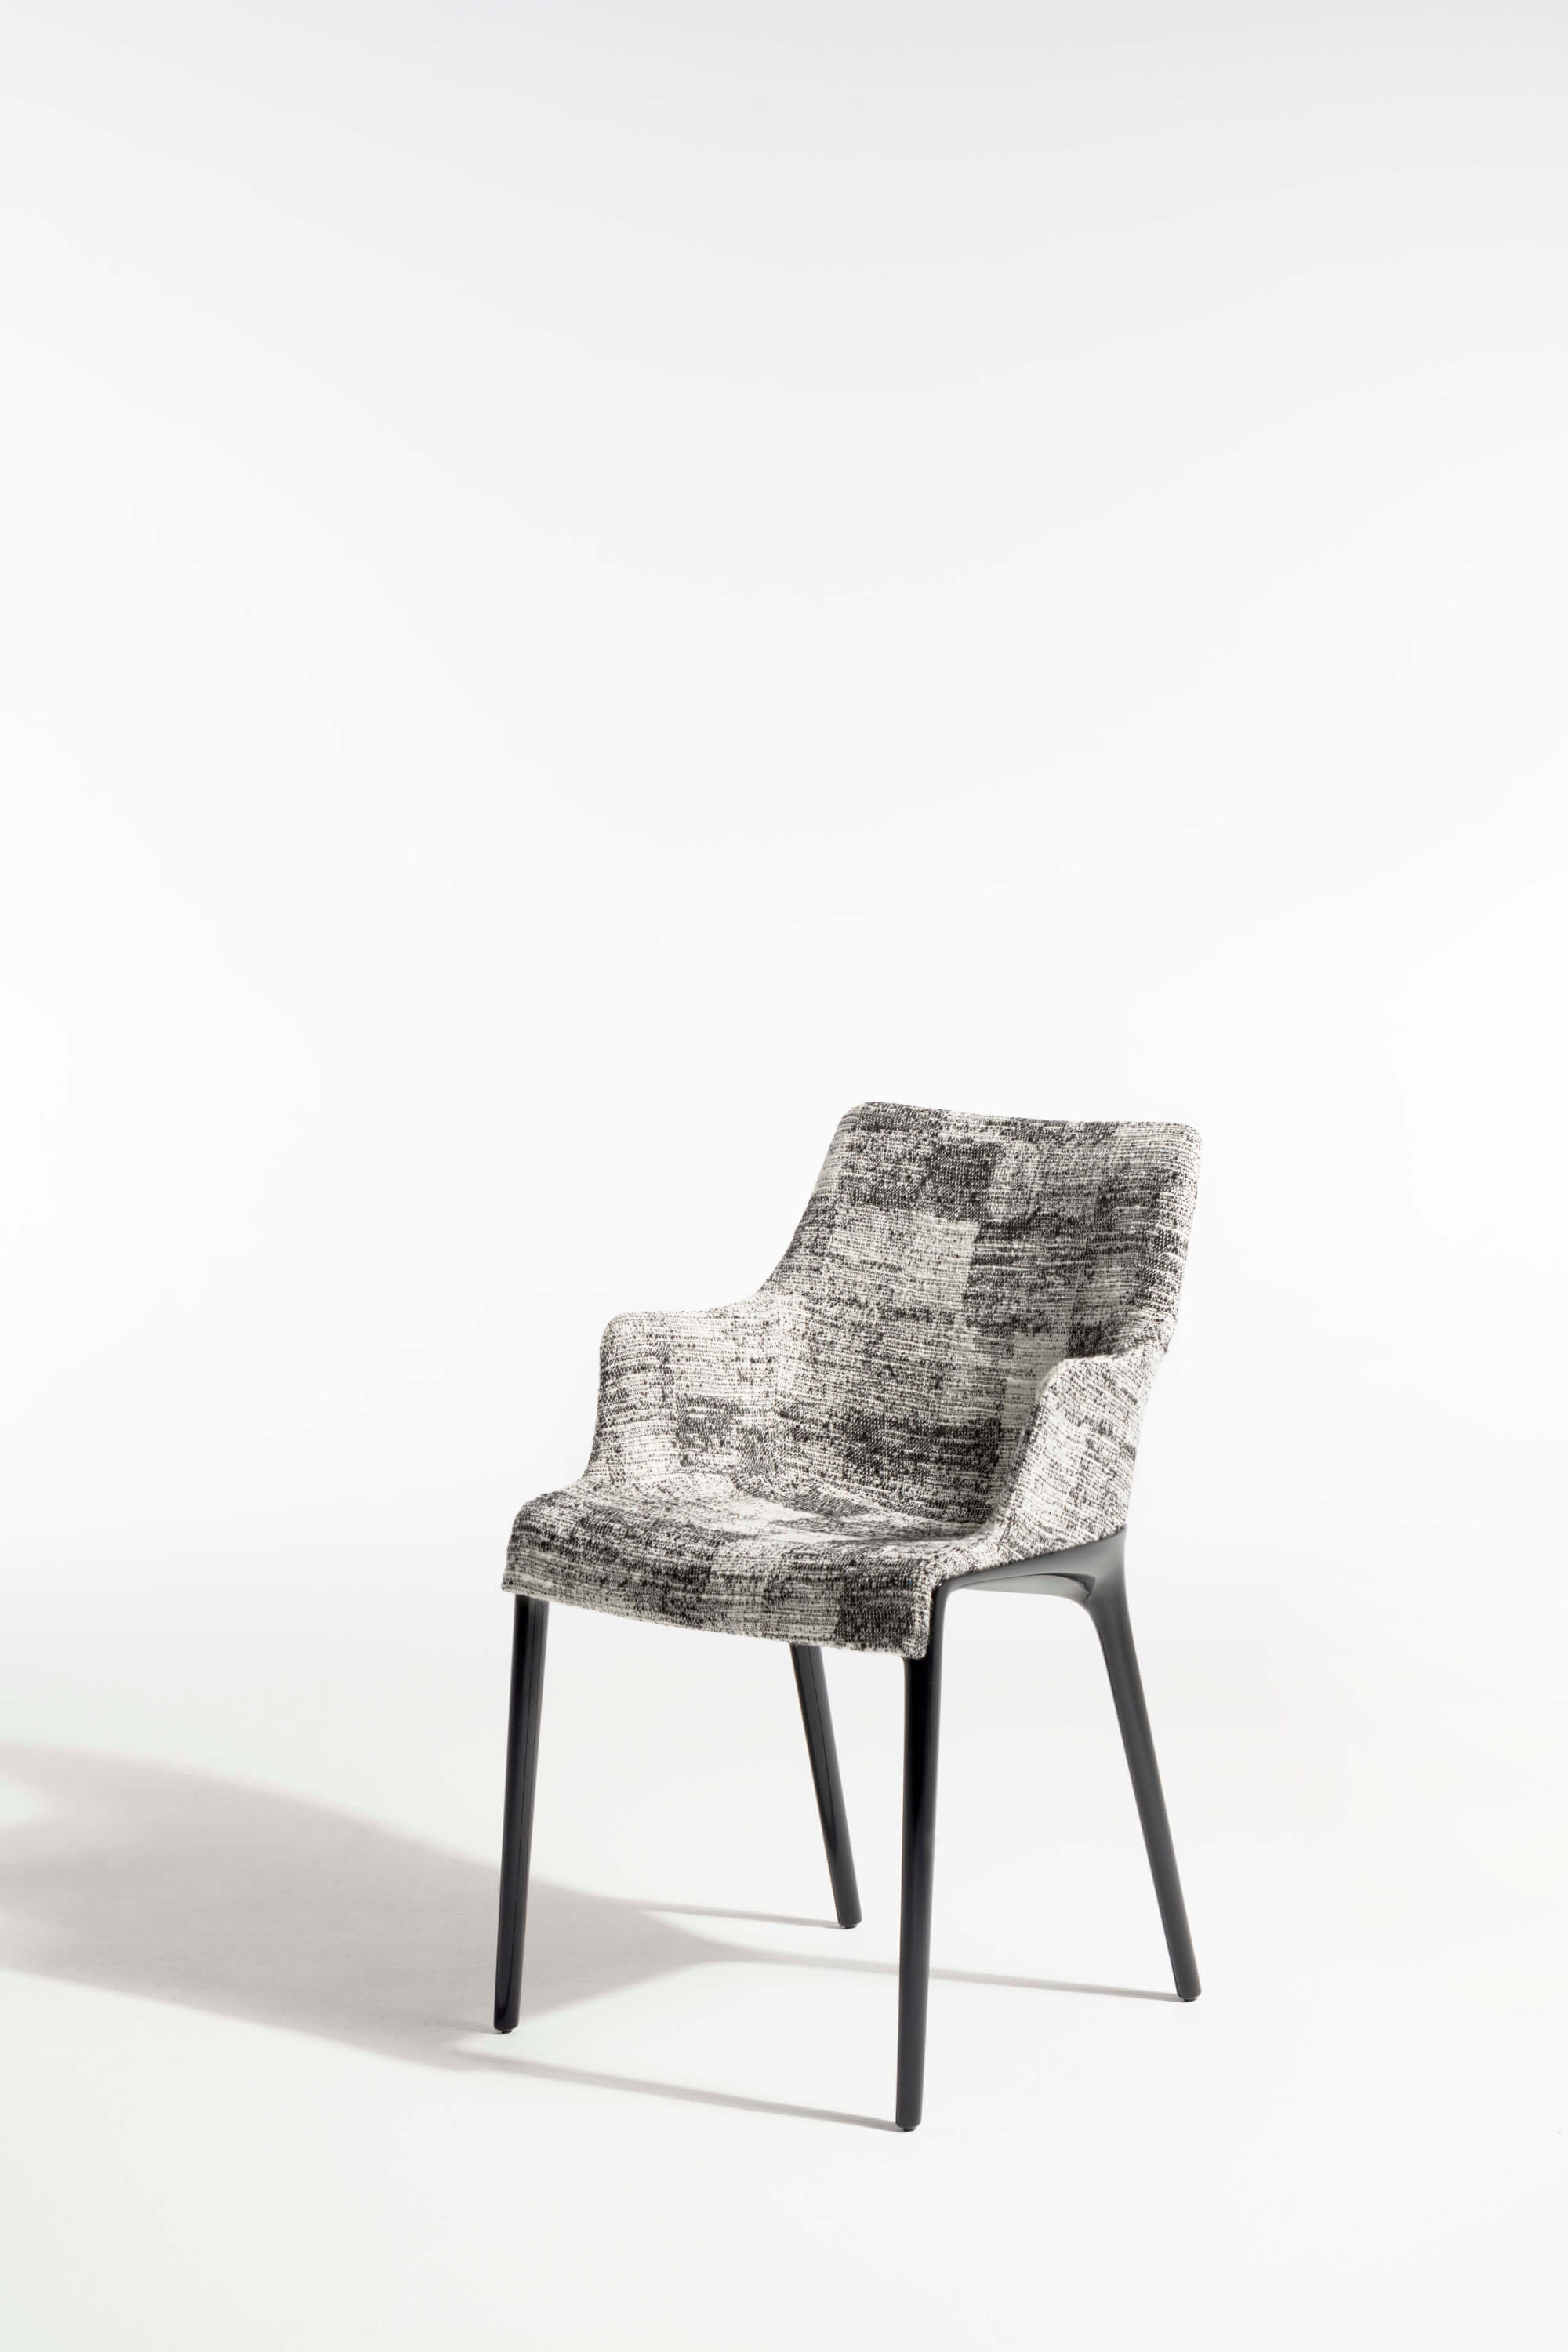 ELEGANZA (KARTELL) - Chairs